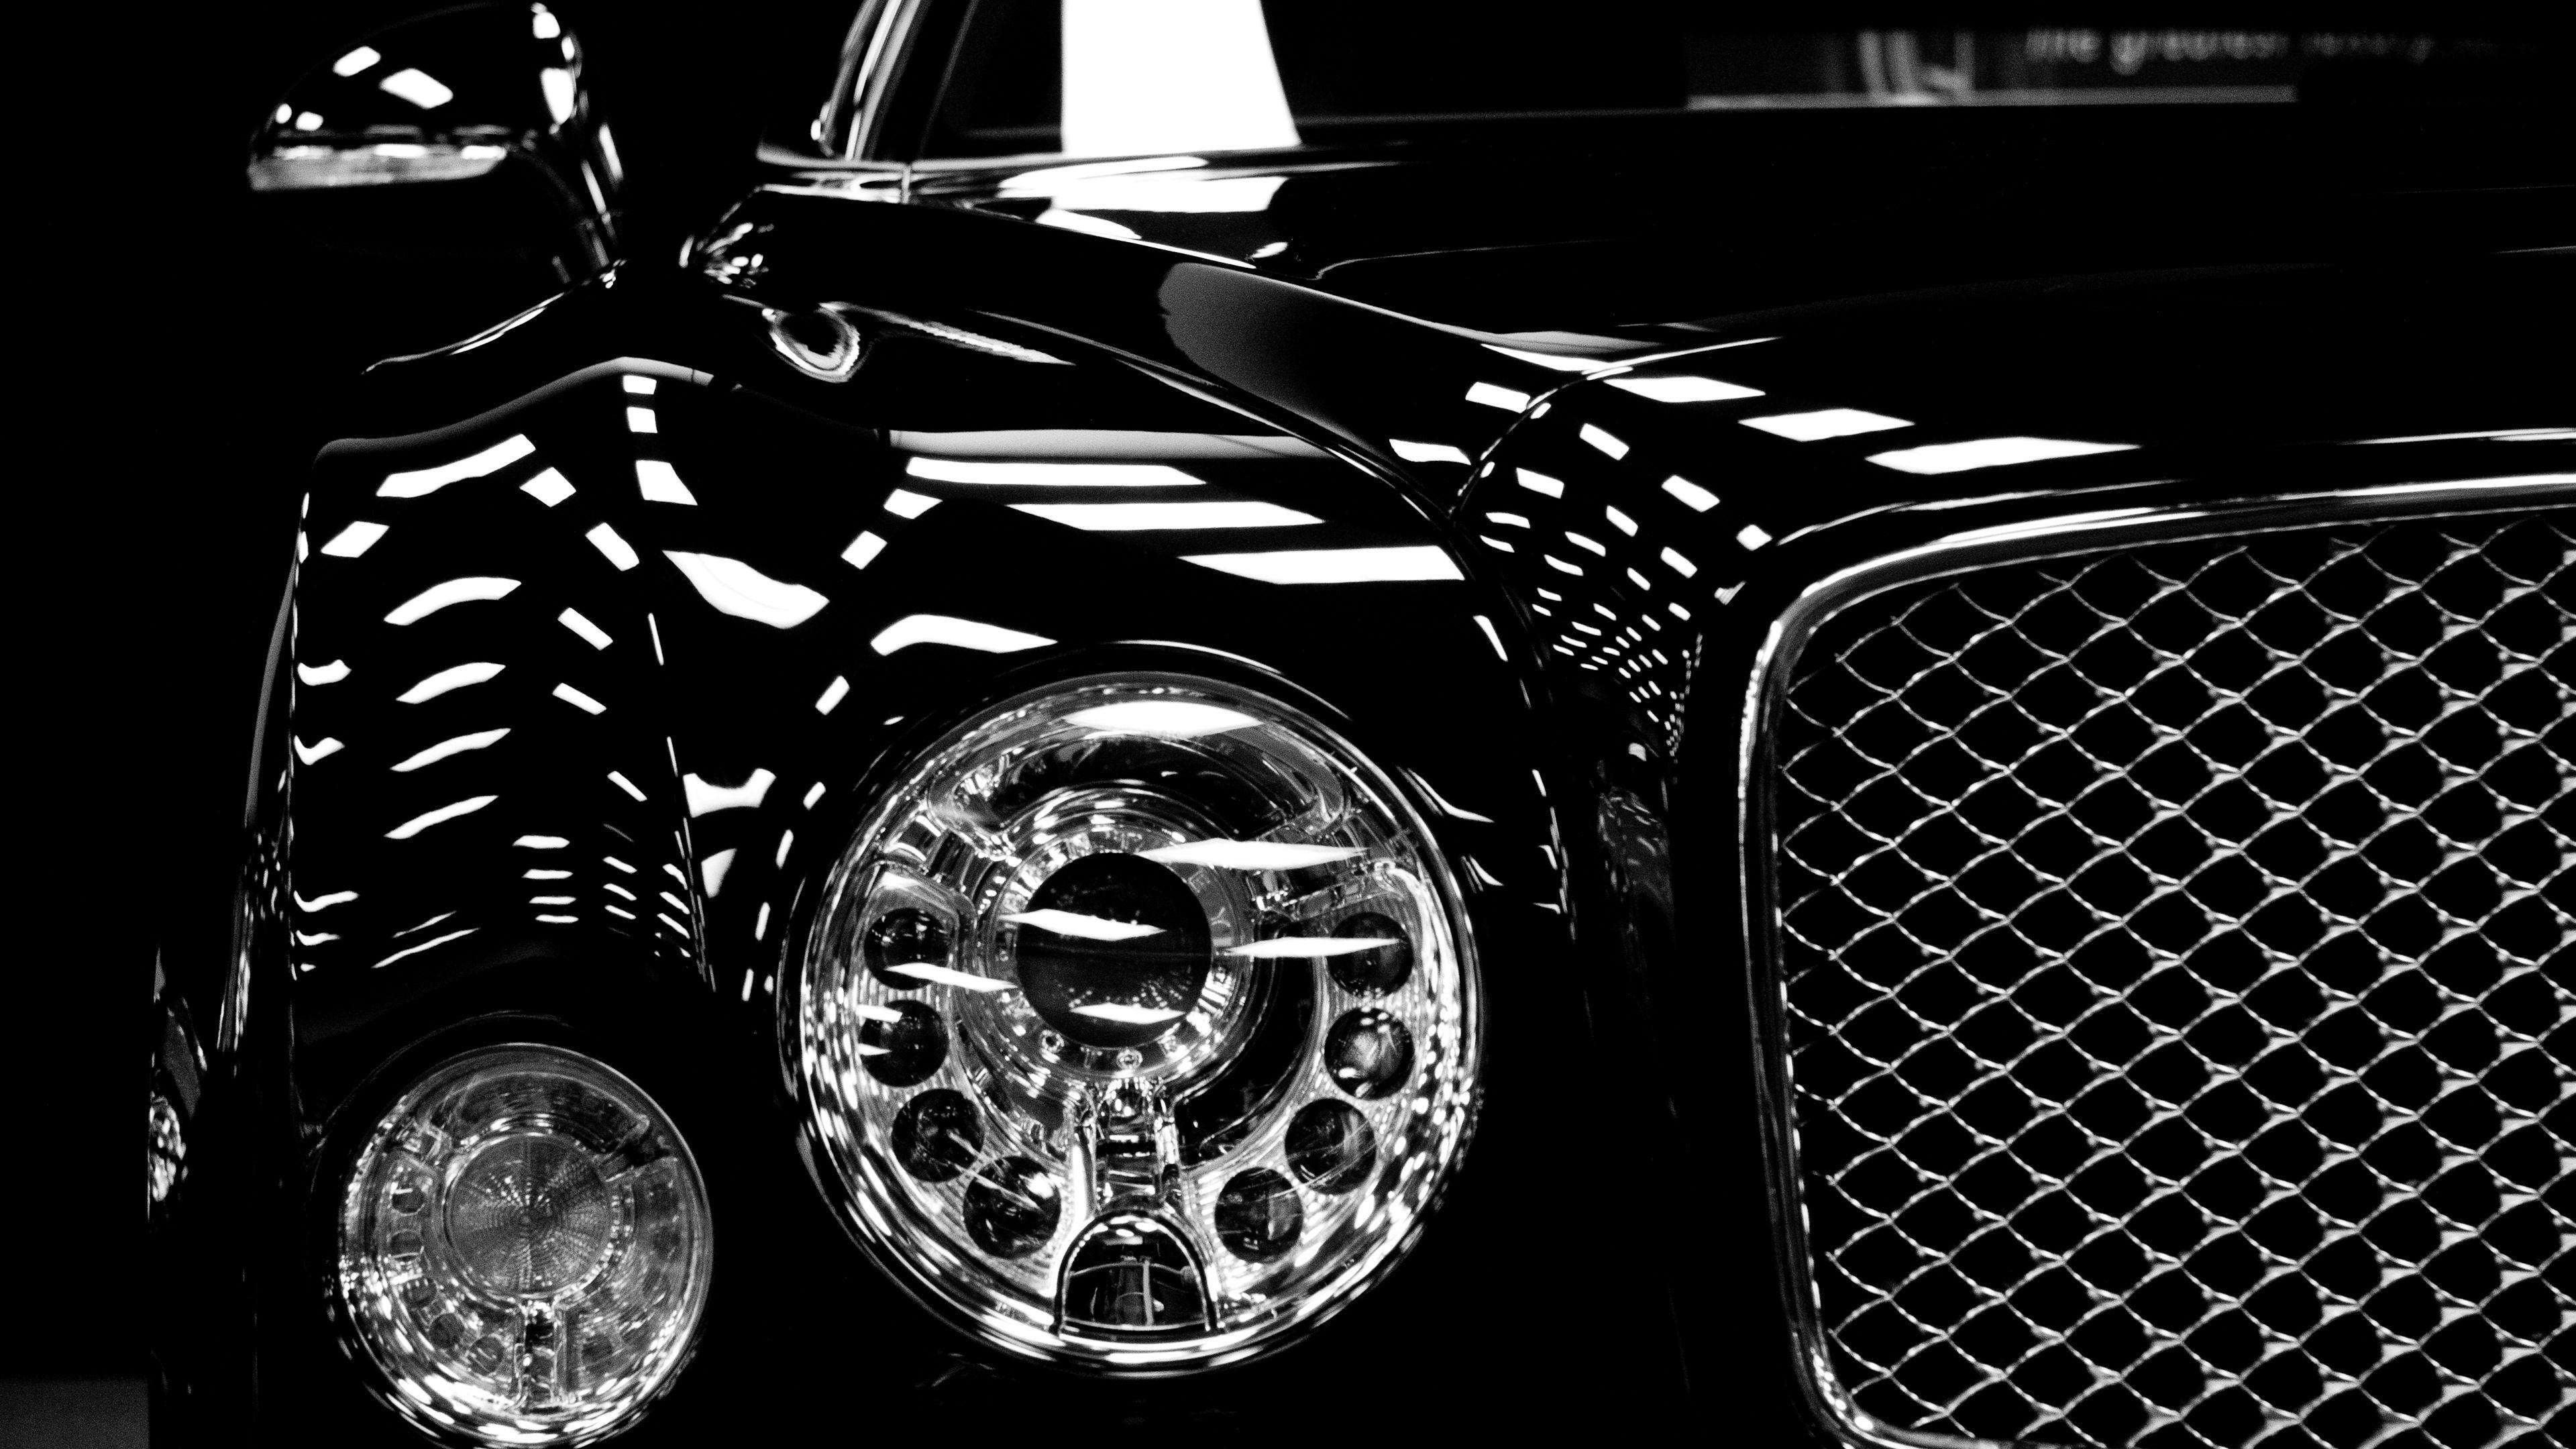 160 4K Bentley Wallpapers  Background Images